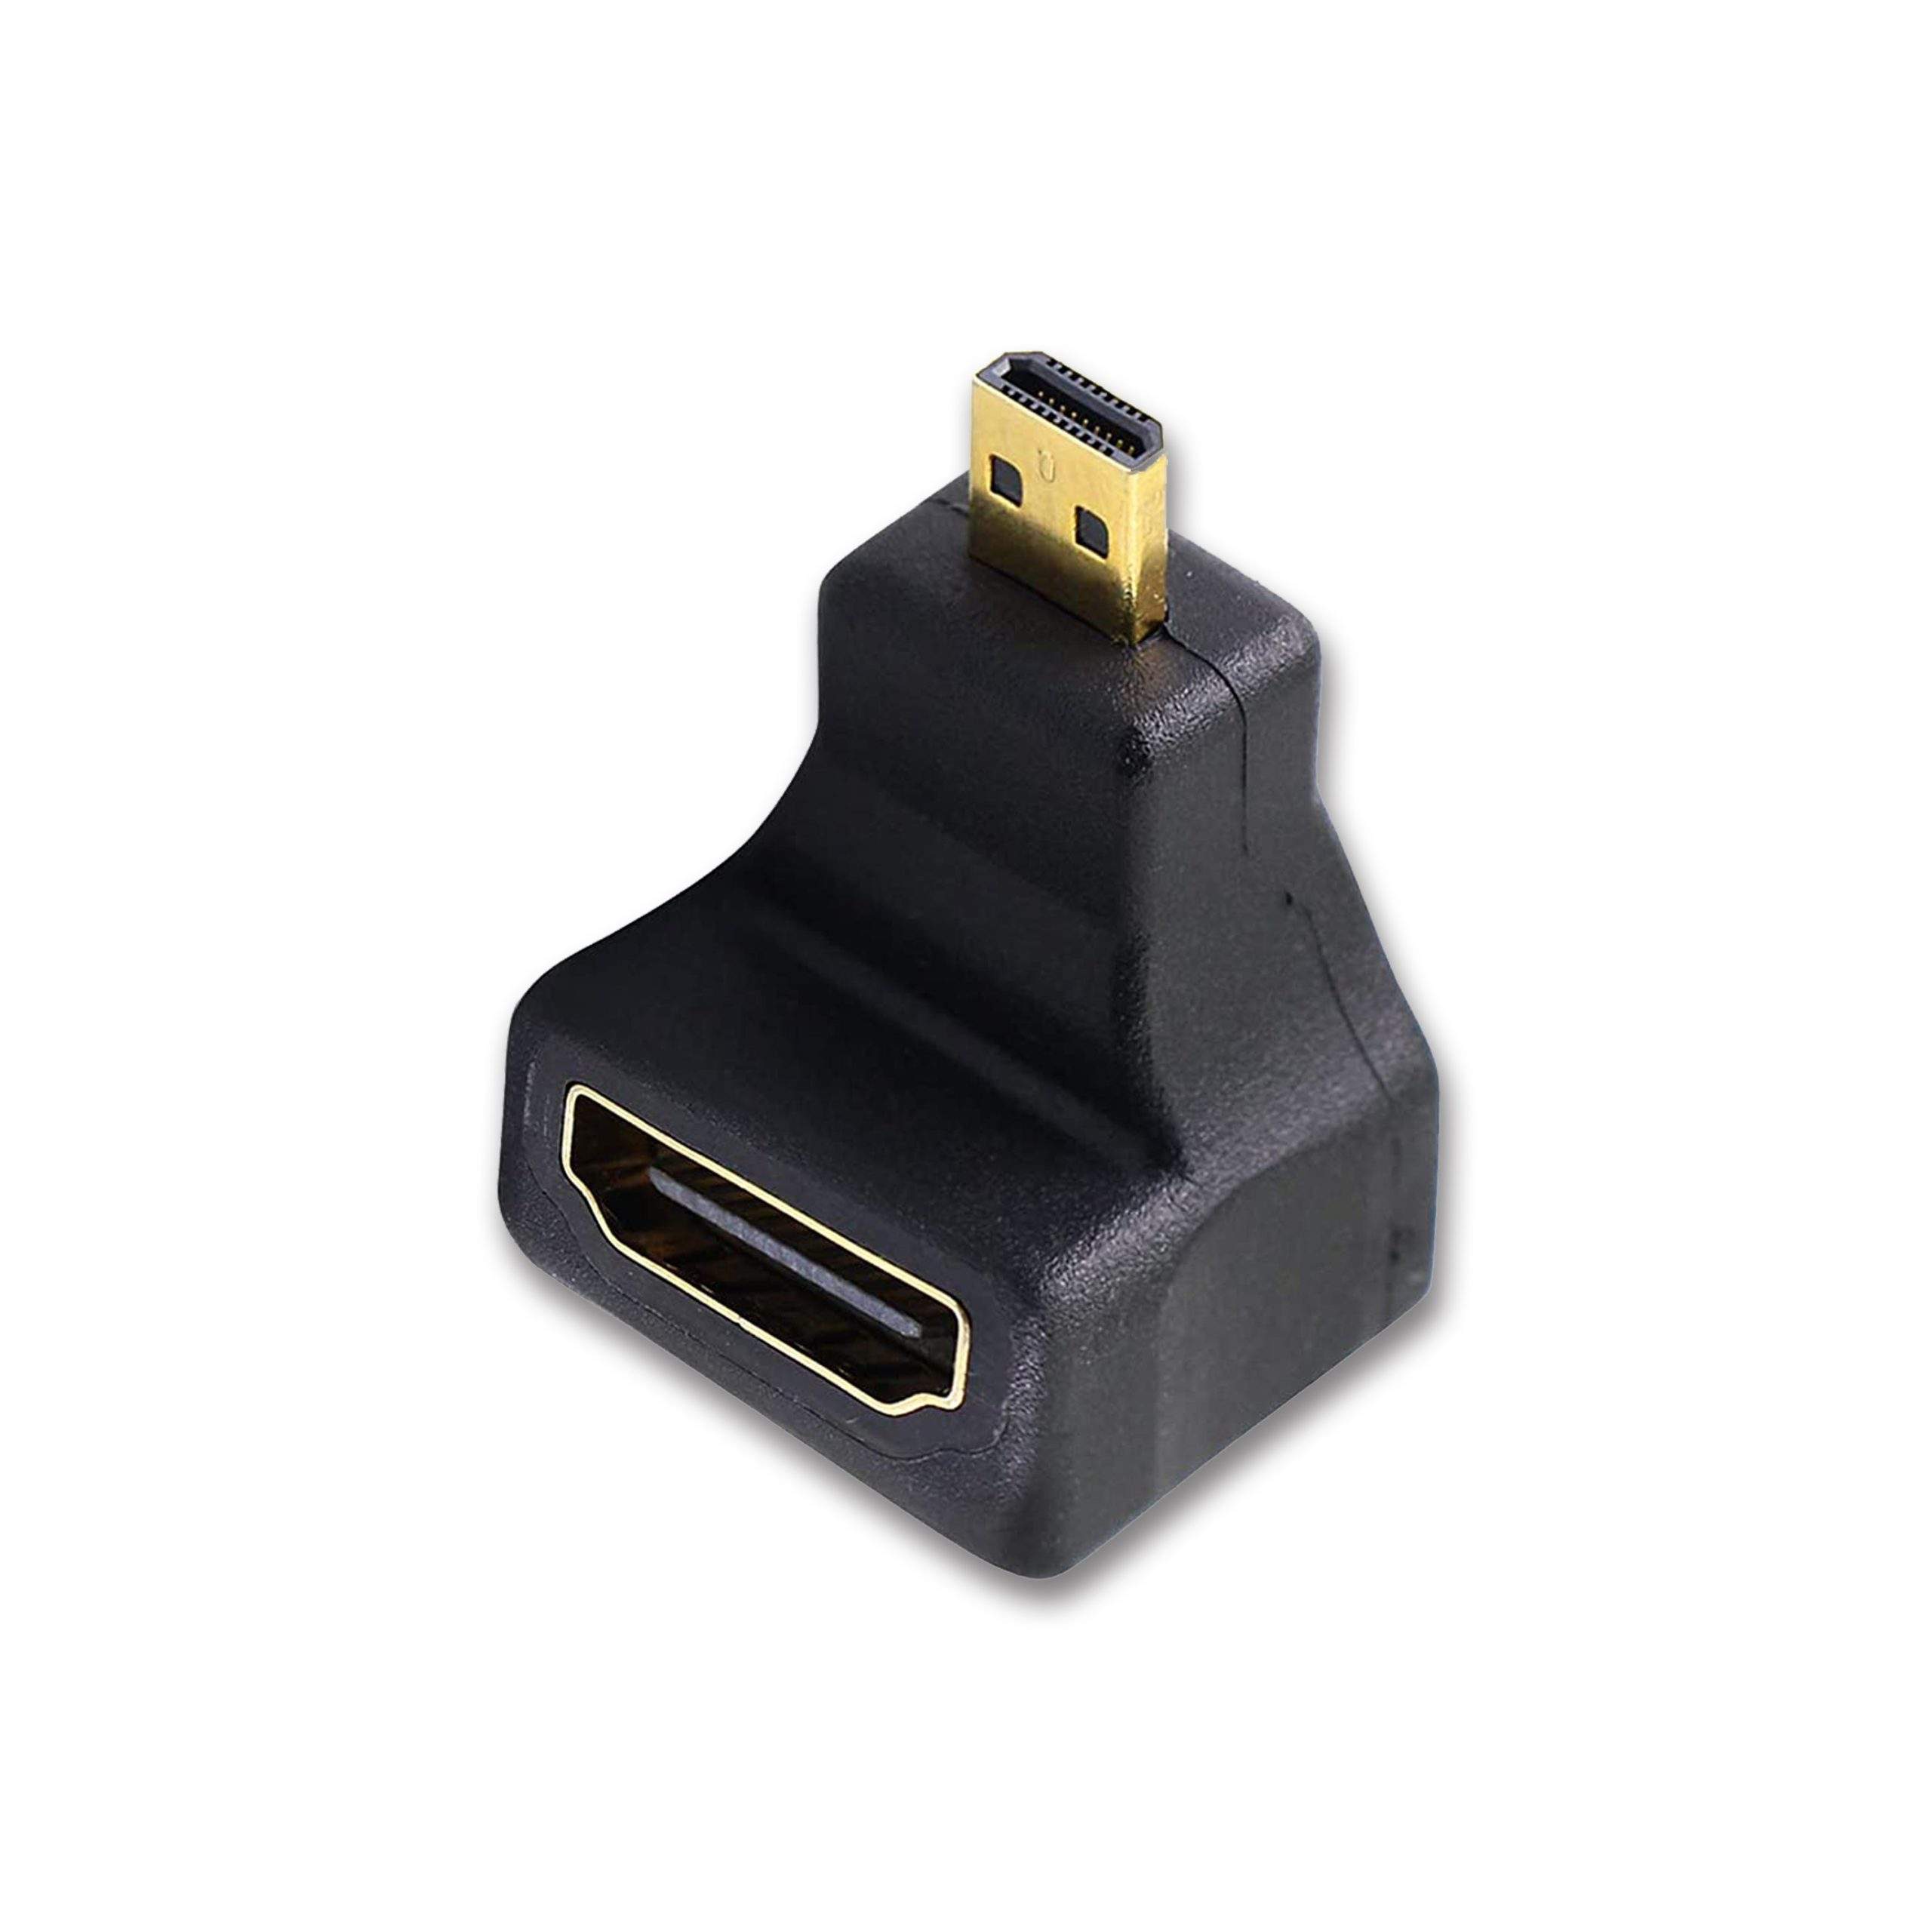 Mini HDMI Cables